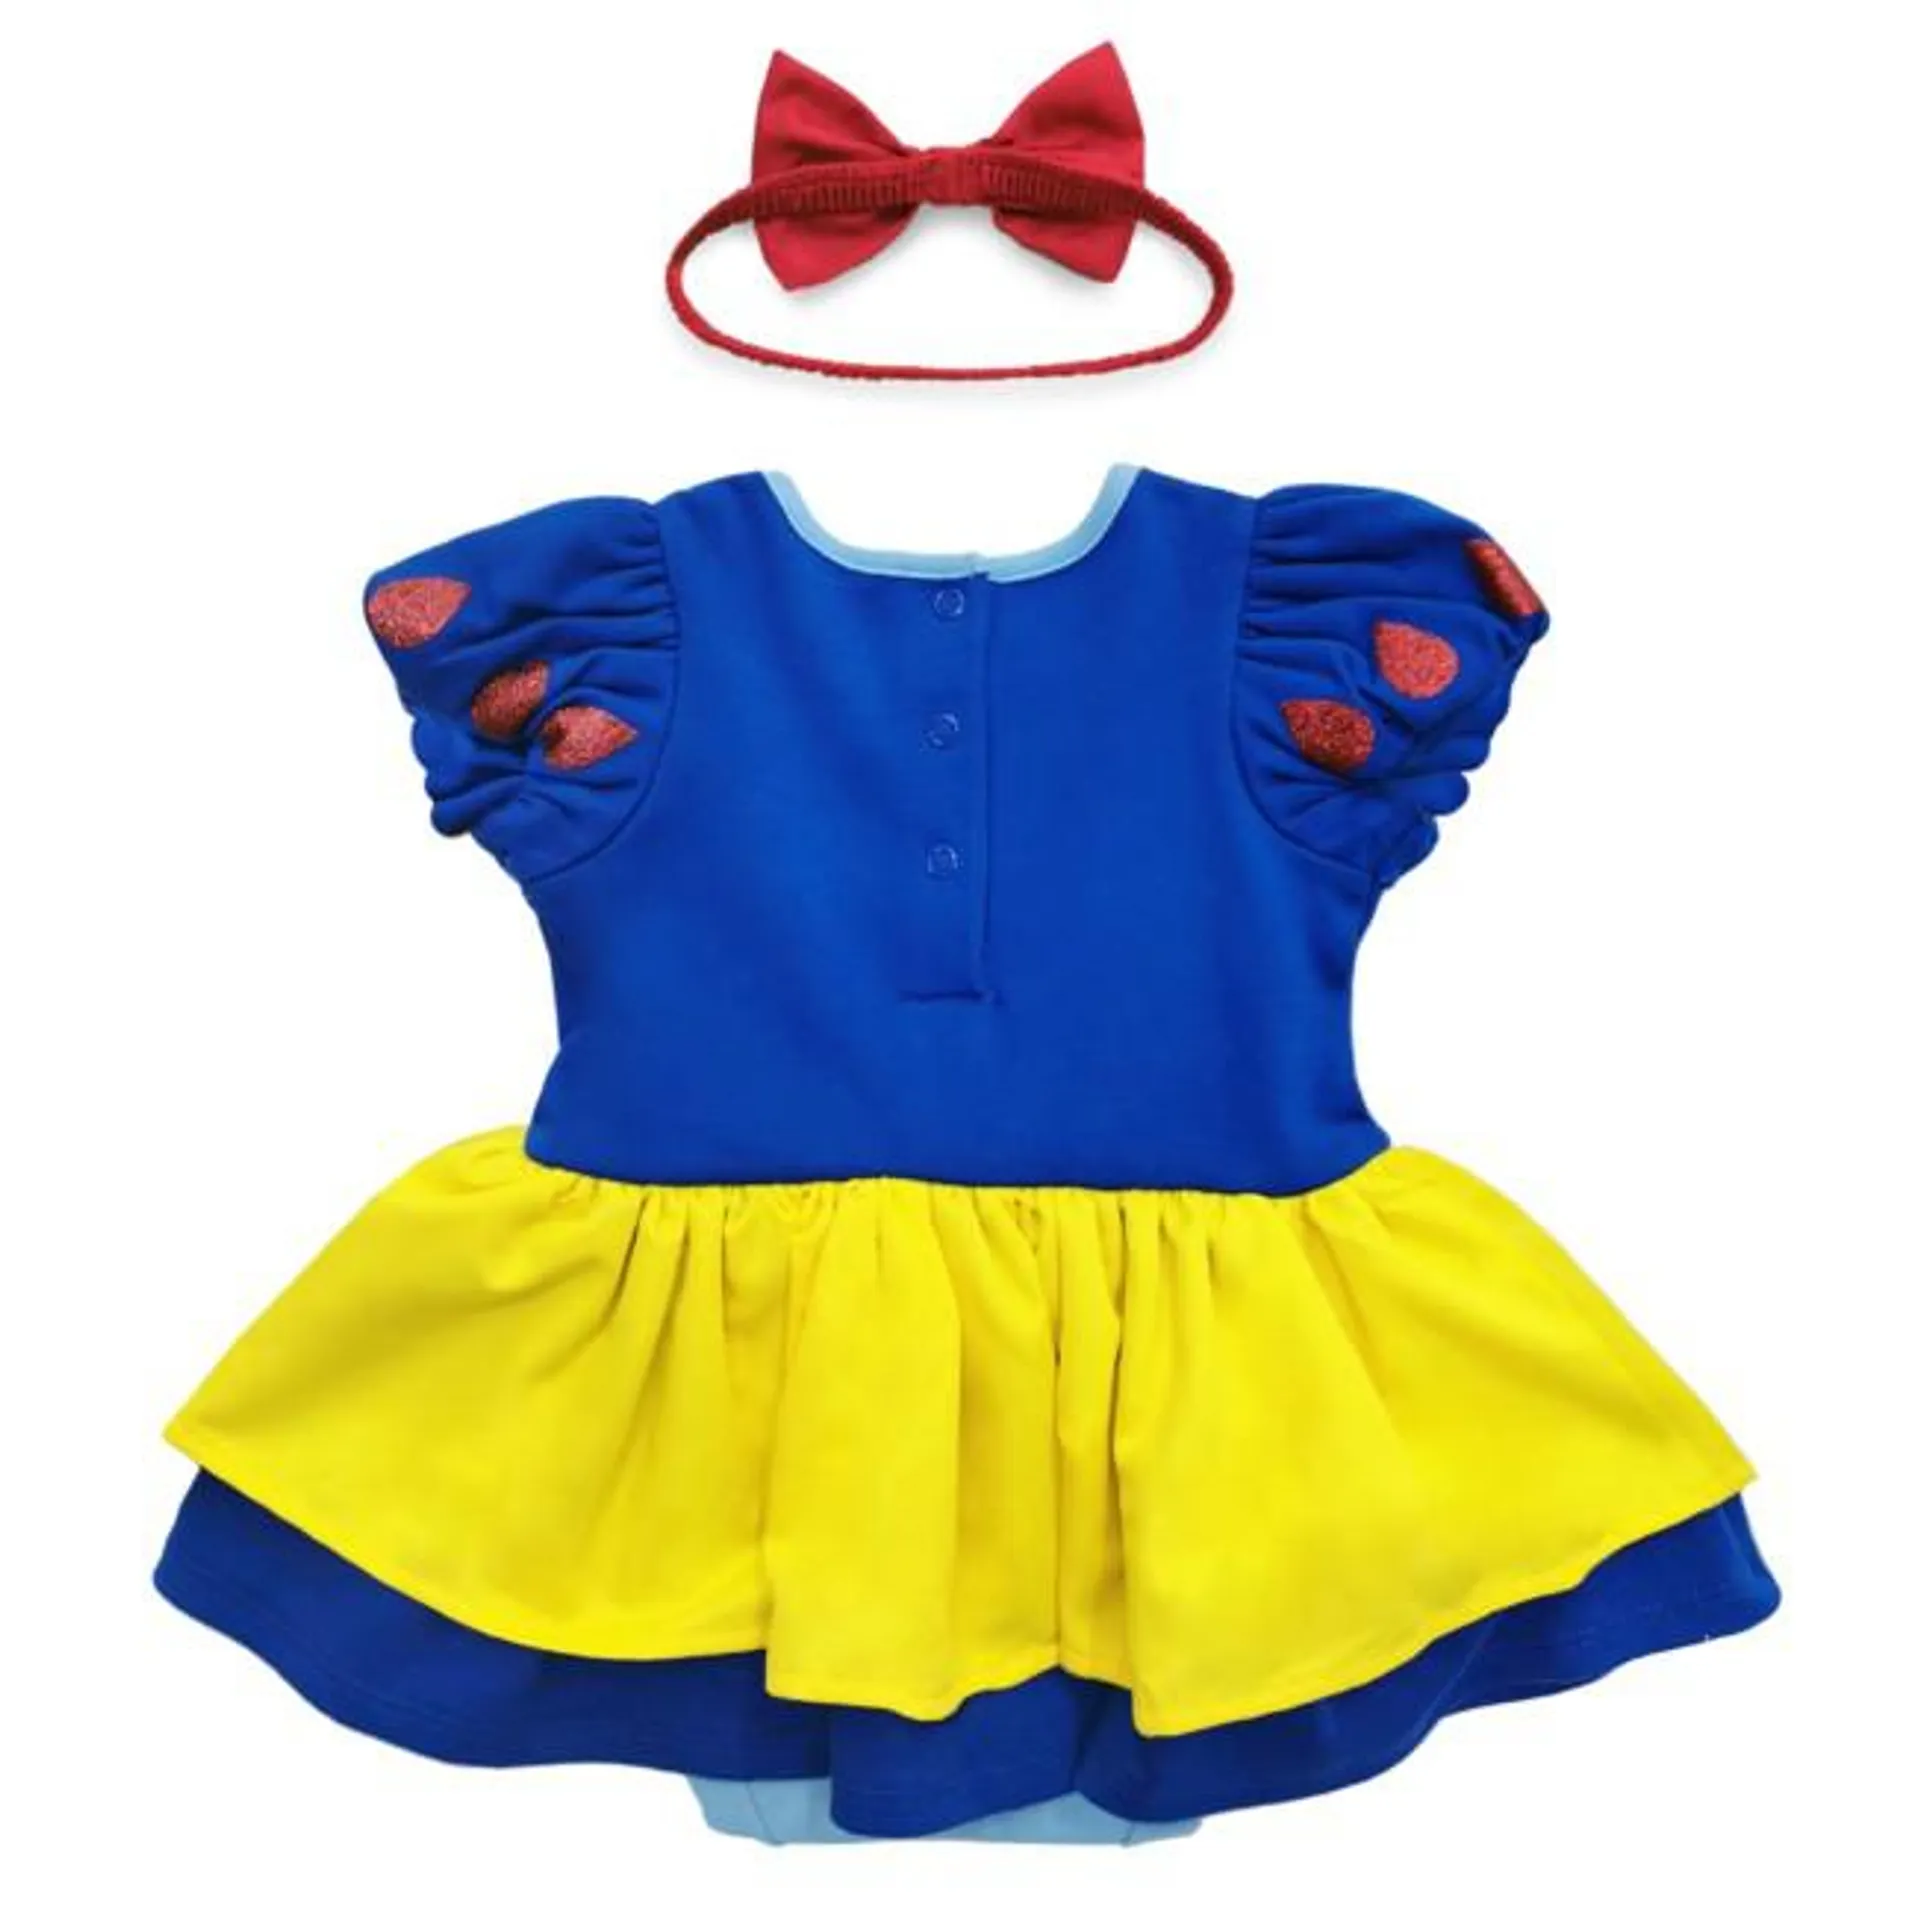 Disney Store Snow White Baby Costume Body Suit